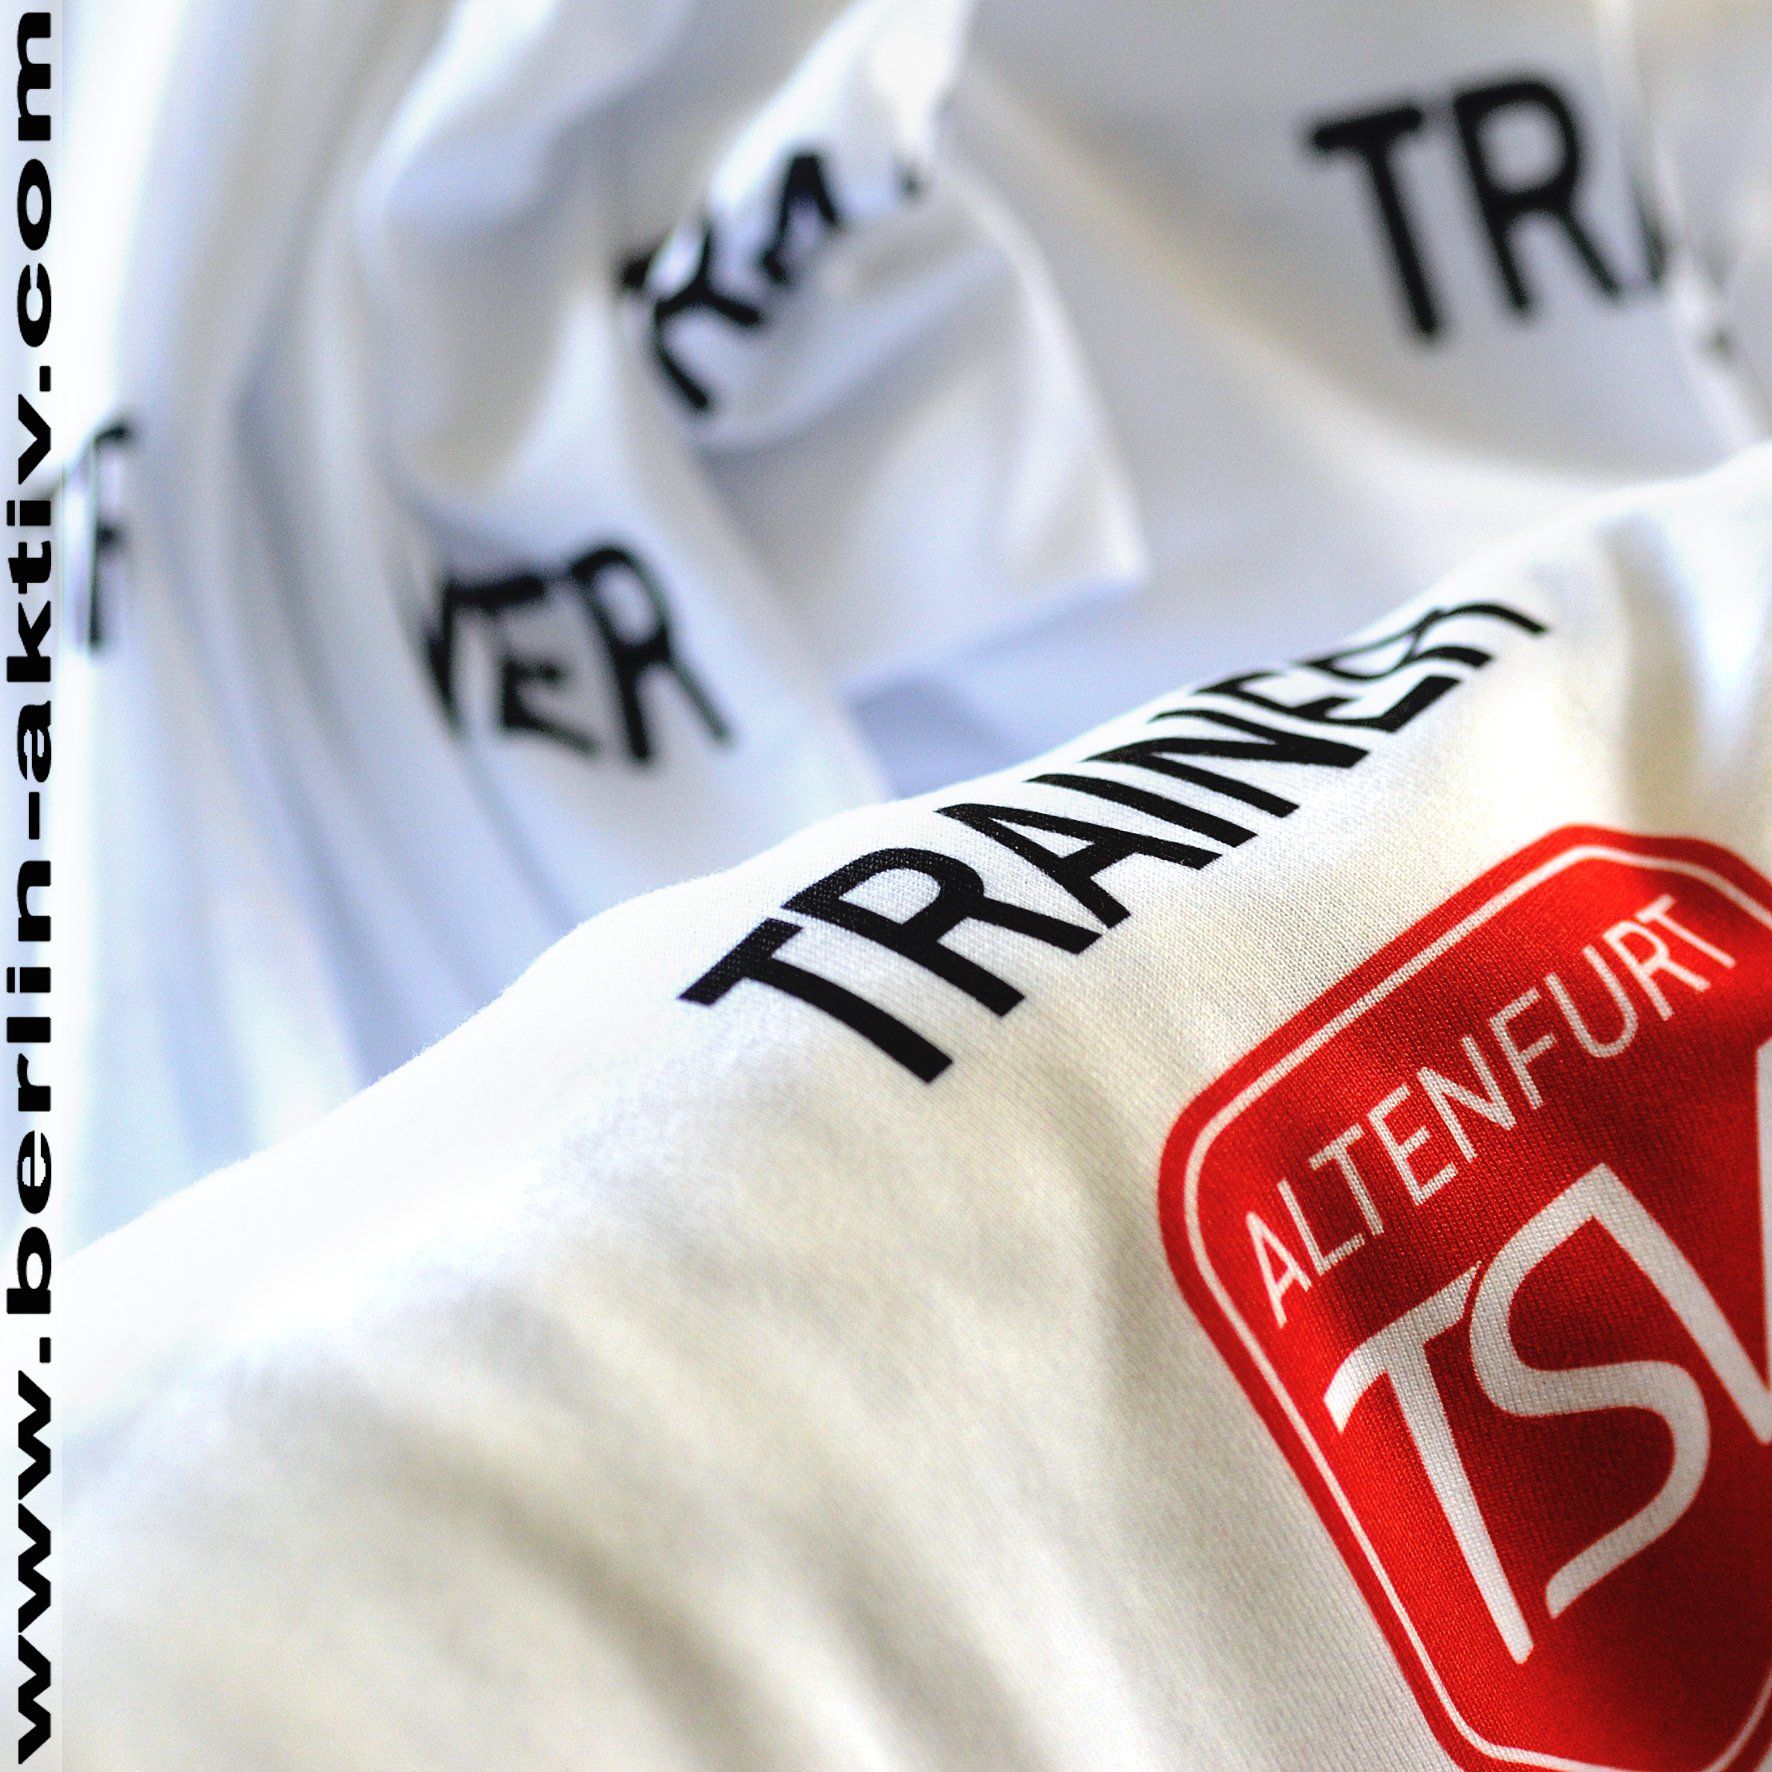 berlin-aktiv.com, Sportshirt,  Trainer-Shirt, weiß, fastdry, workwear, Vereinslogo, Druck Design, Logo TSV Altenfurt, 04